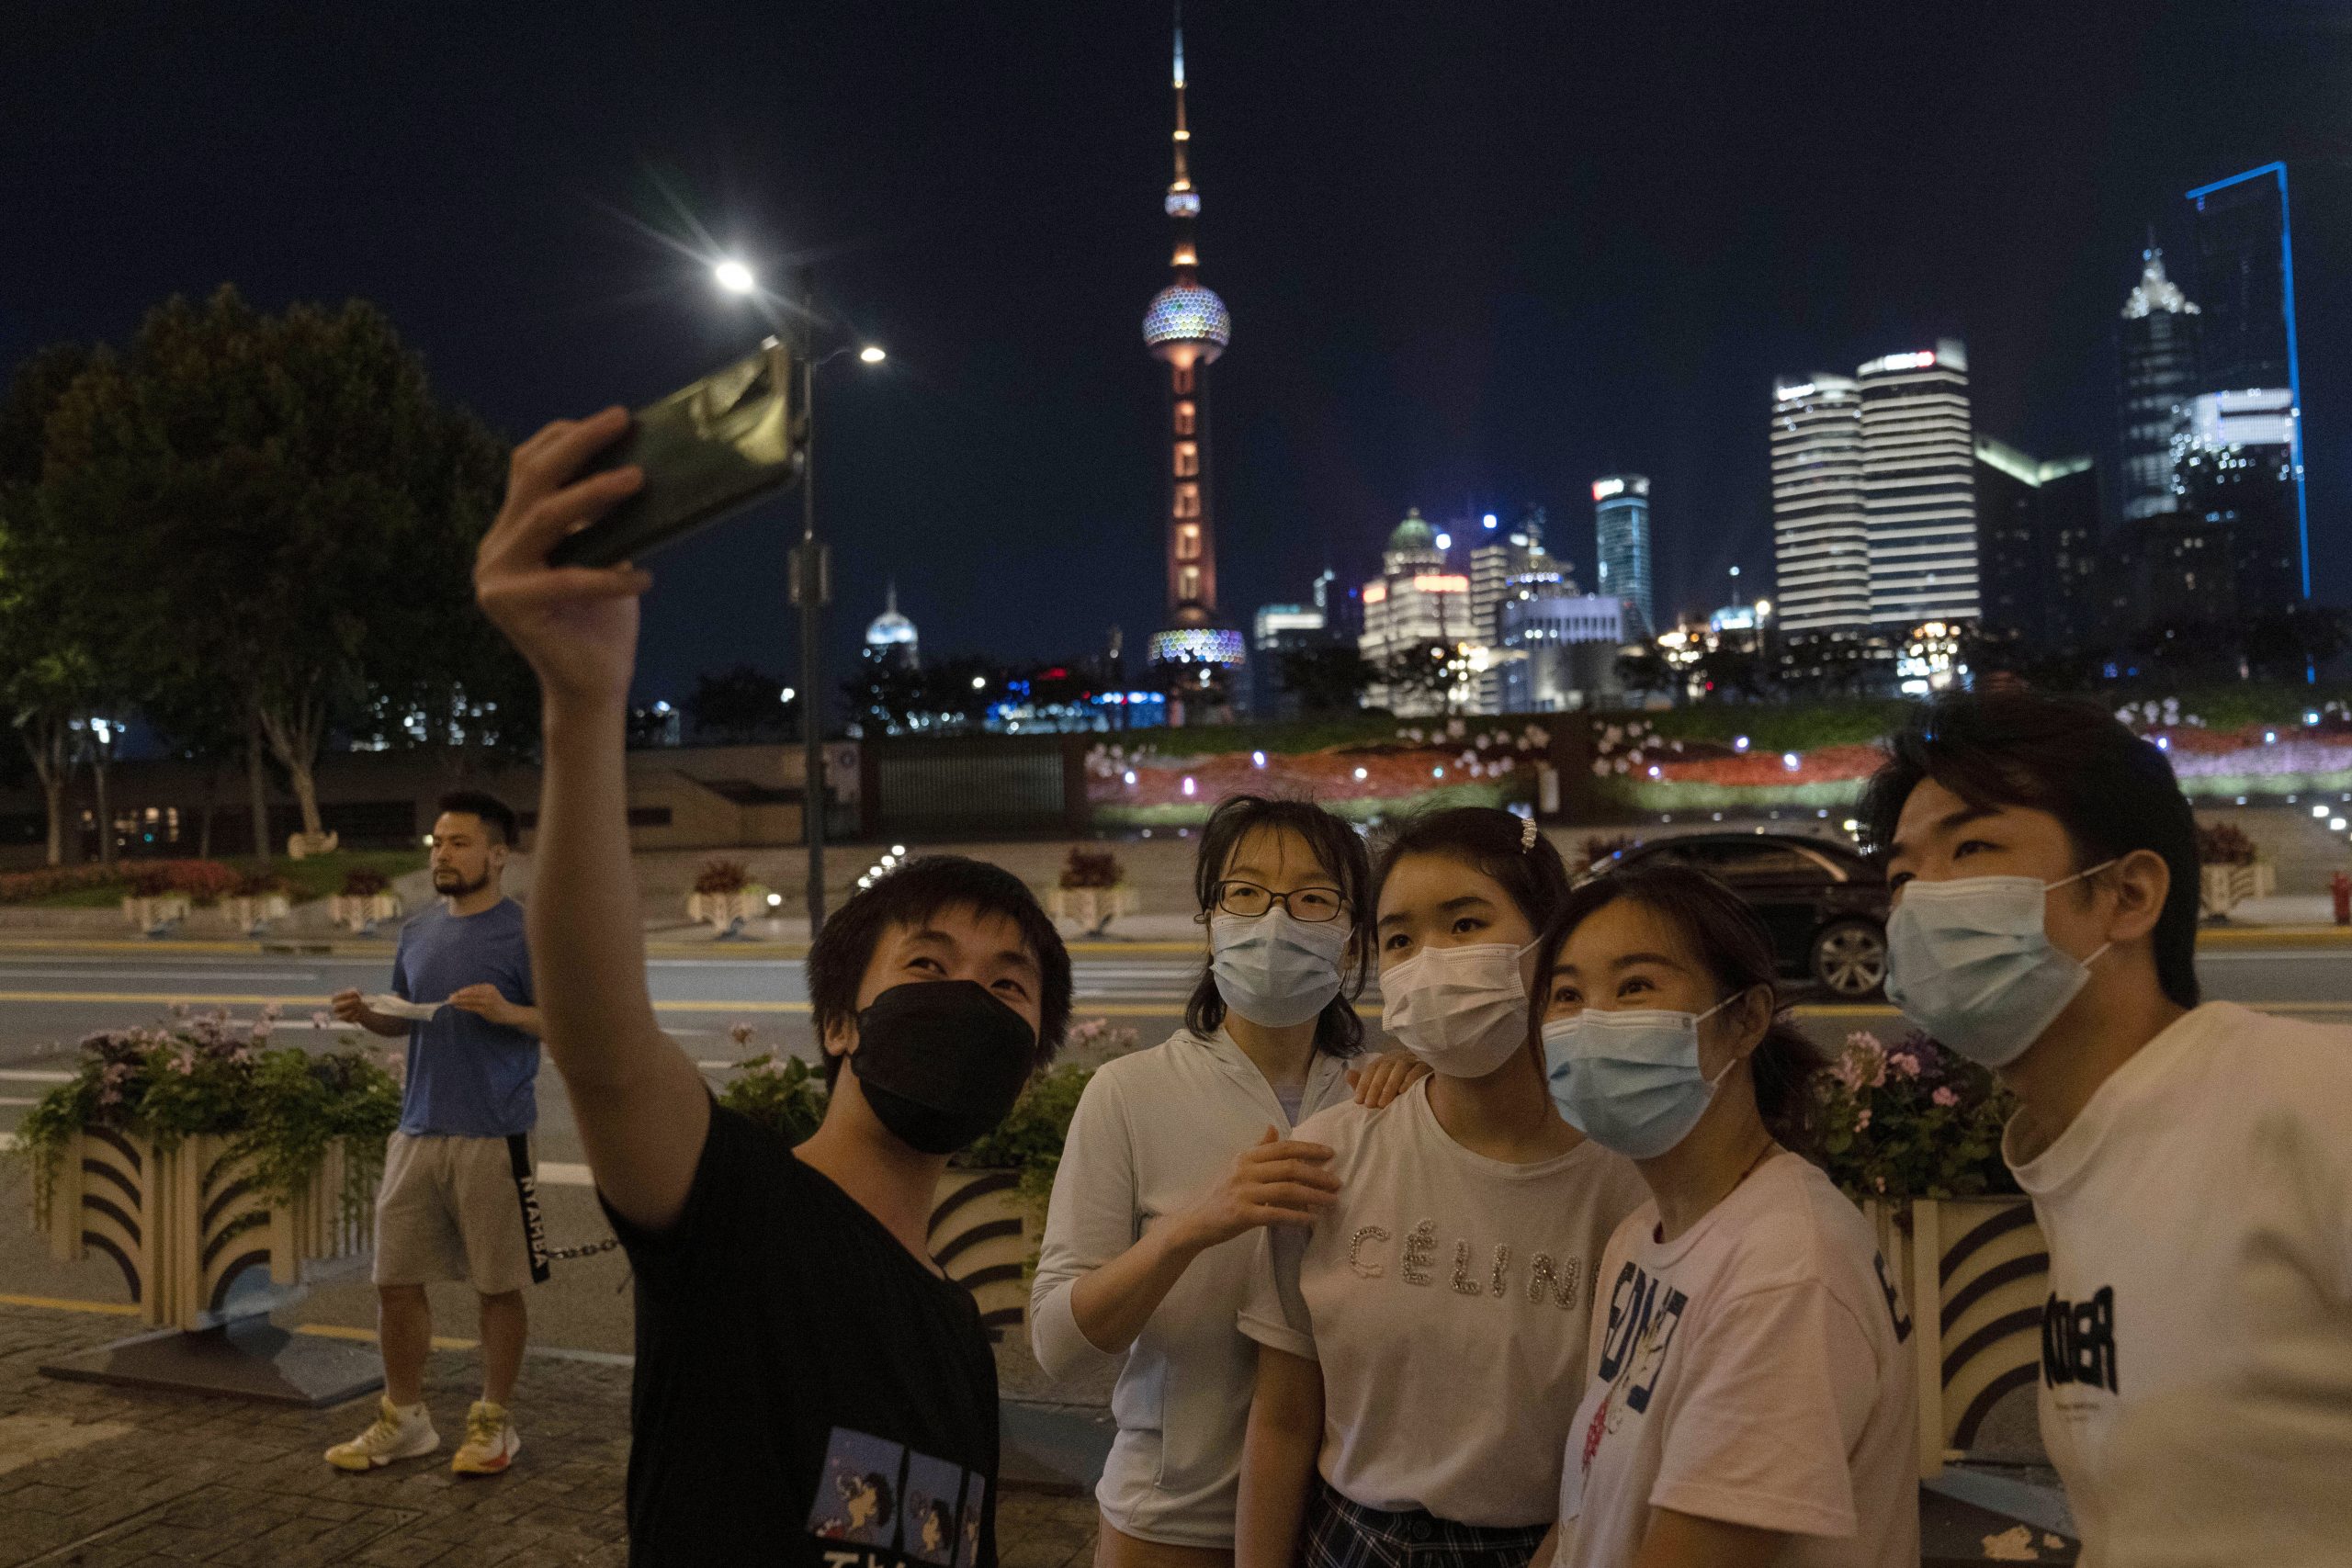 上海解封 零时以后：市民在街头举杯、相拥 放烟花